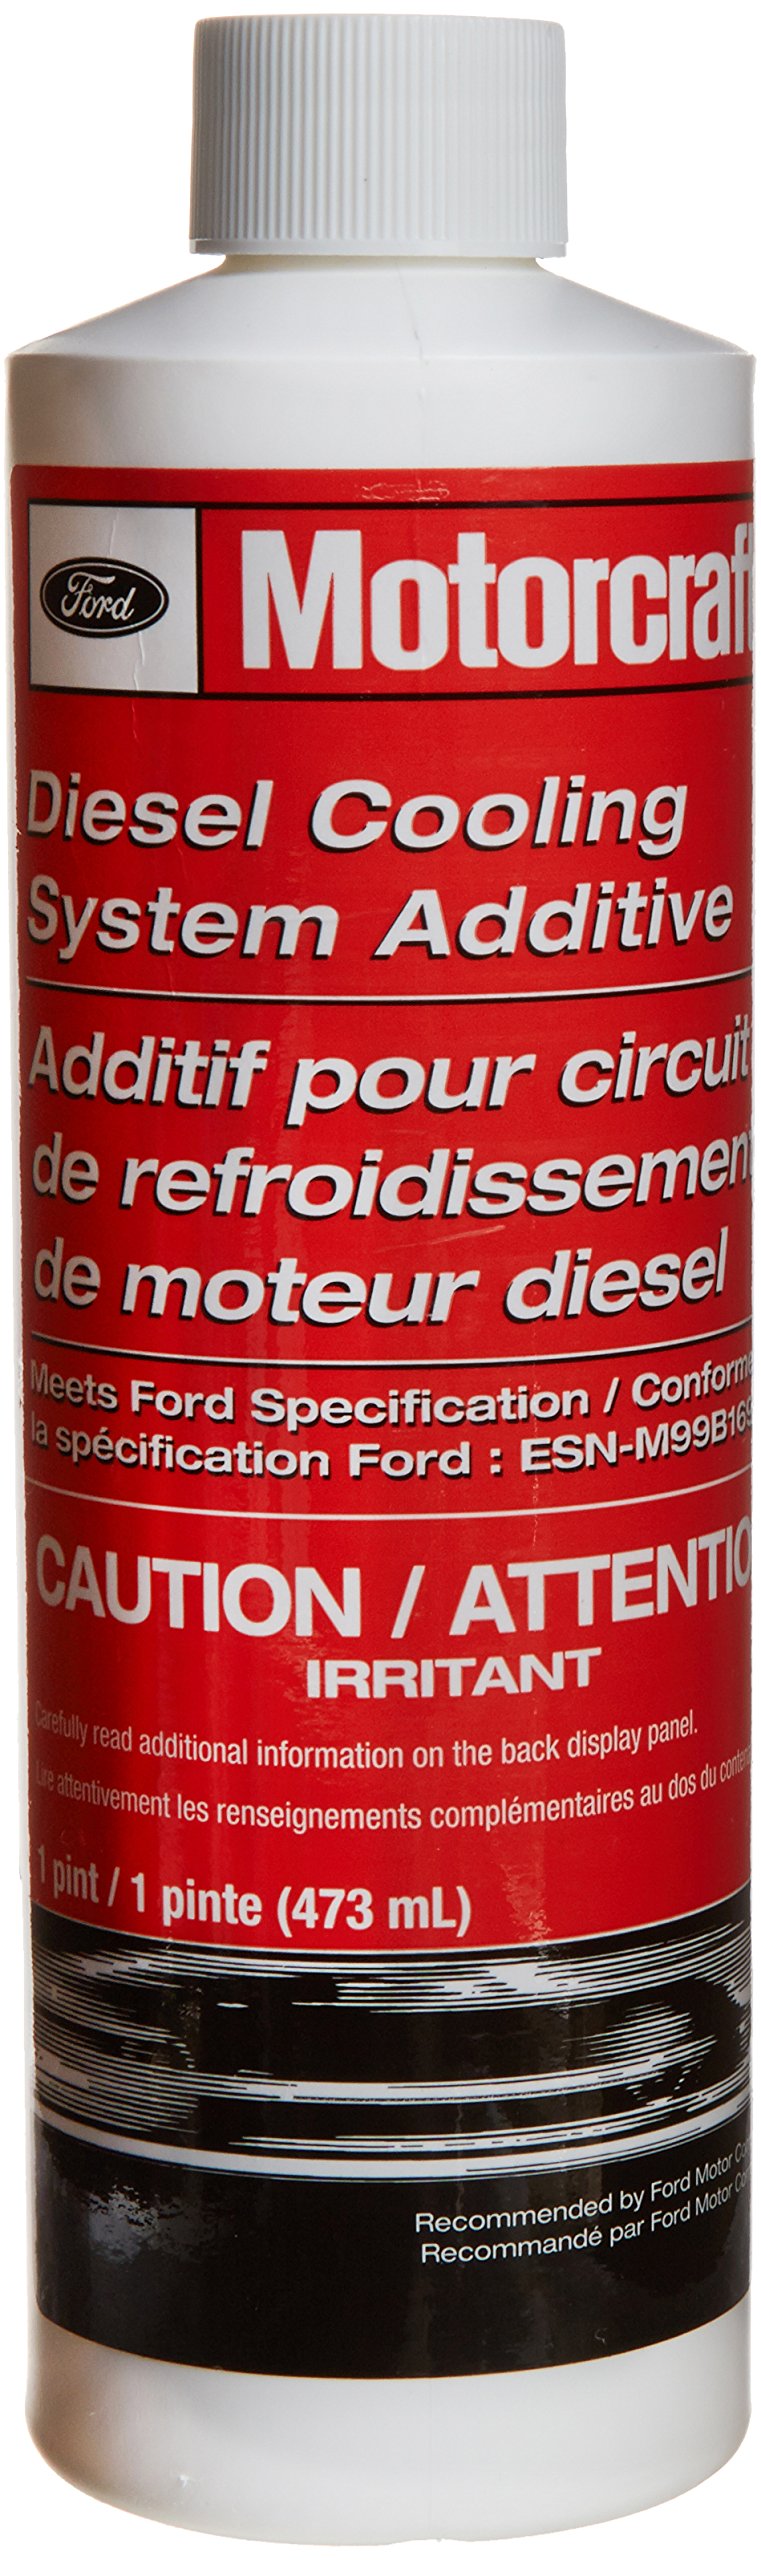 Motorcraft Ford Diesel Coolant Additive VC8 - 3 Bottles von Ford